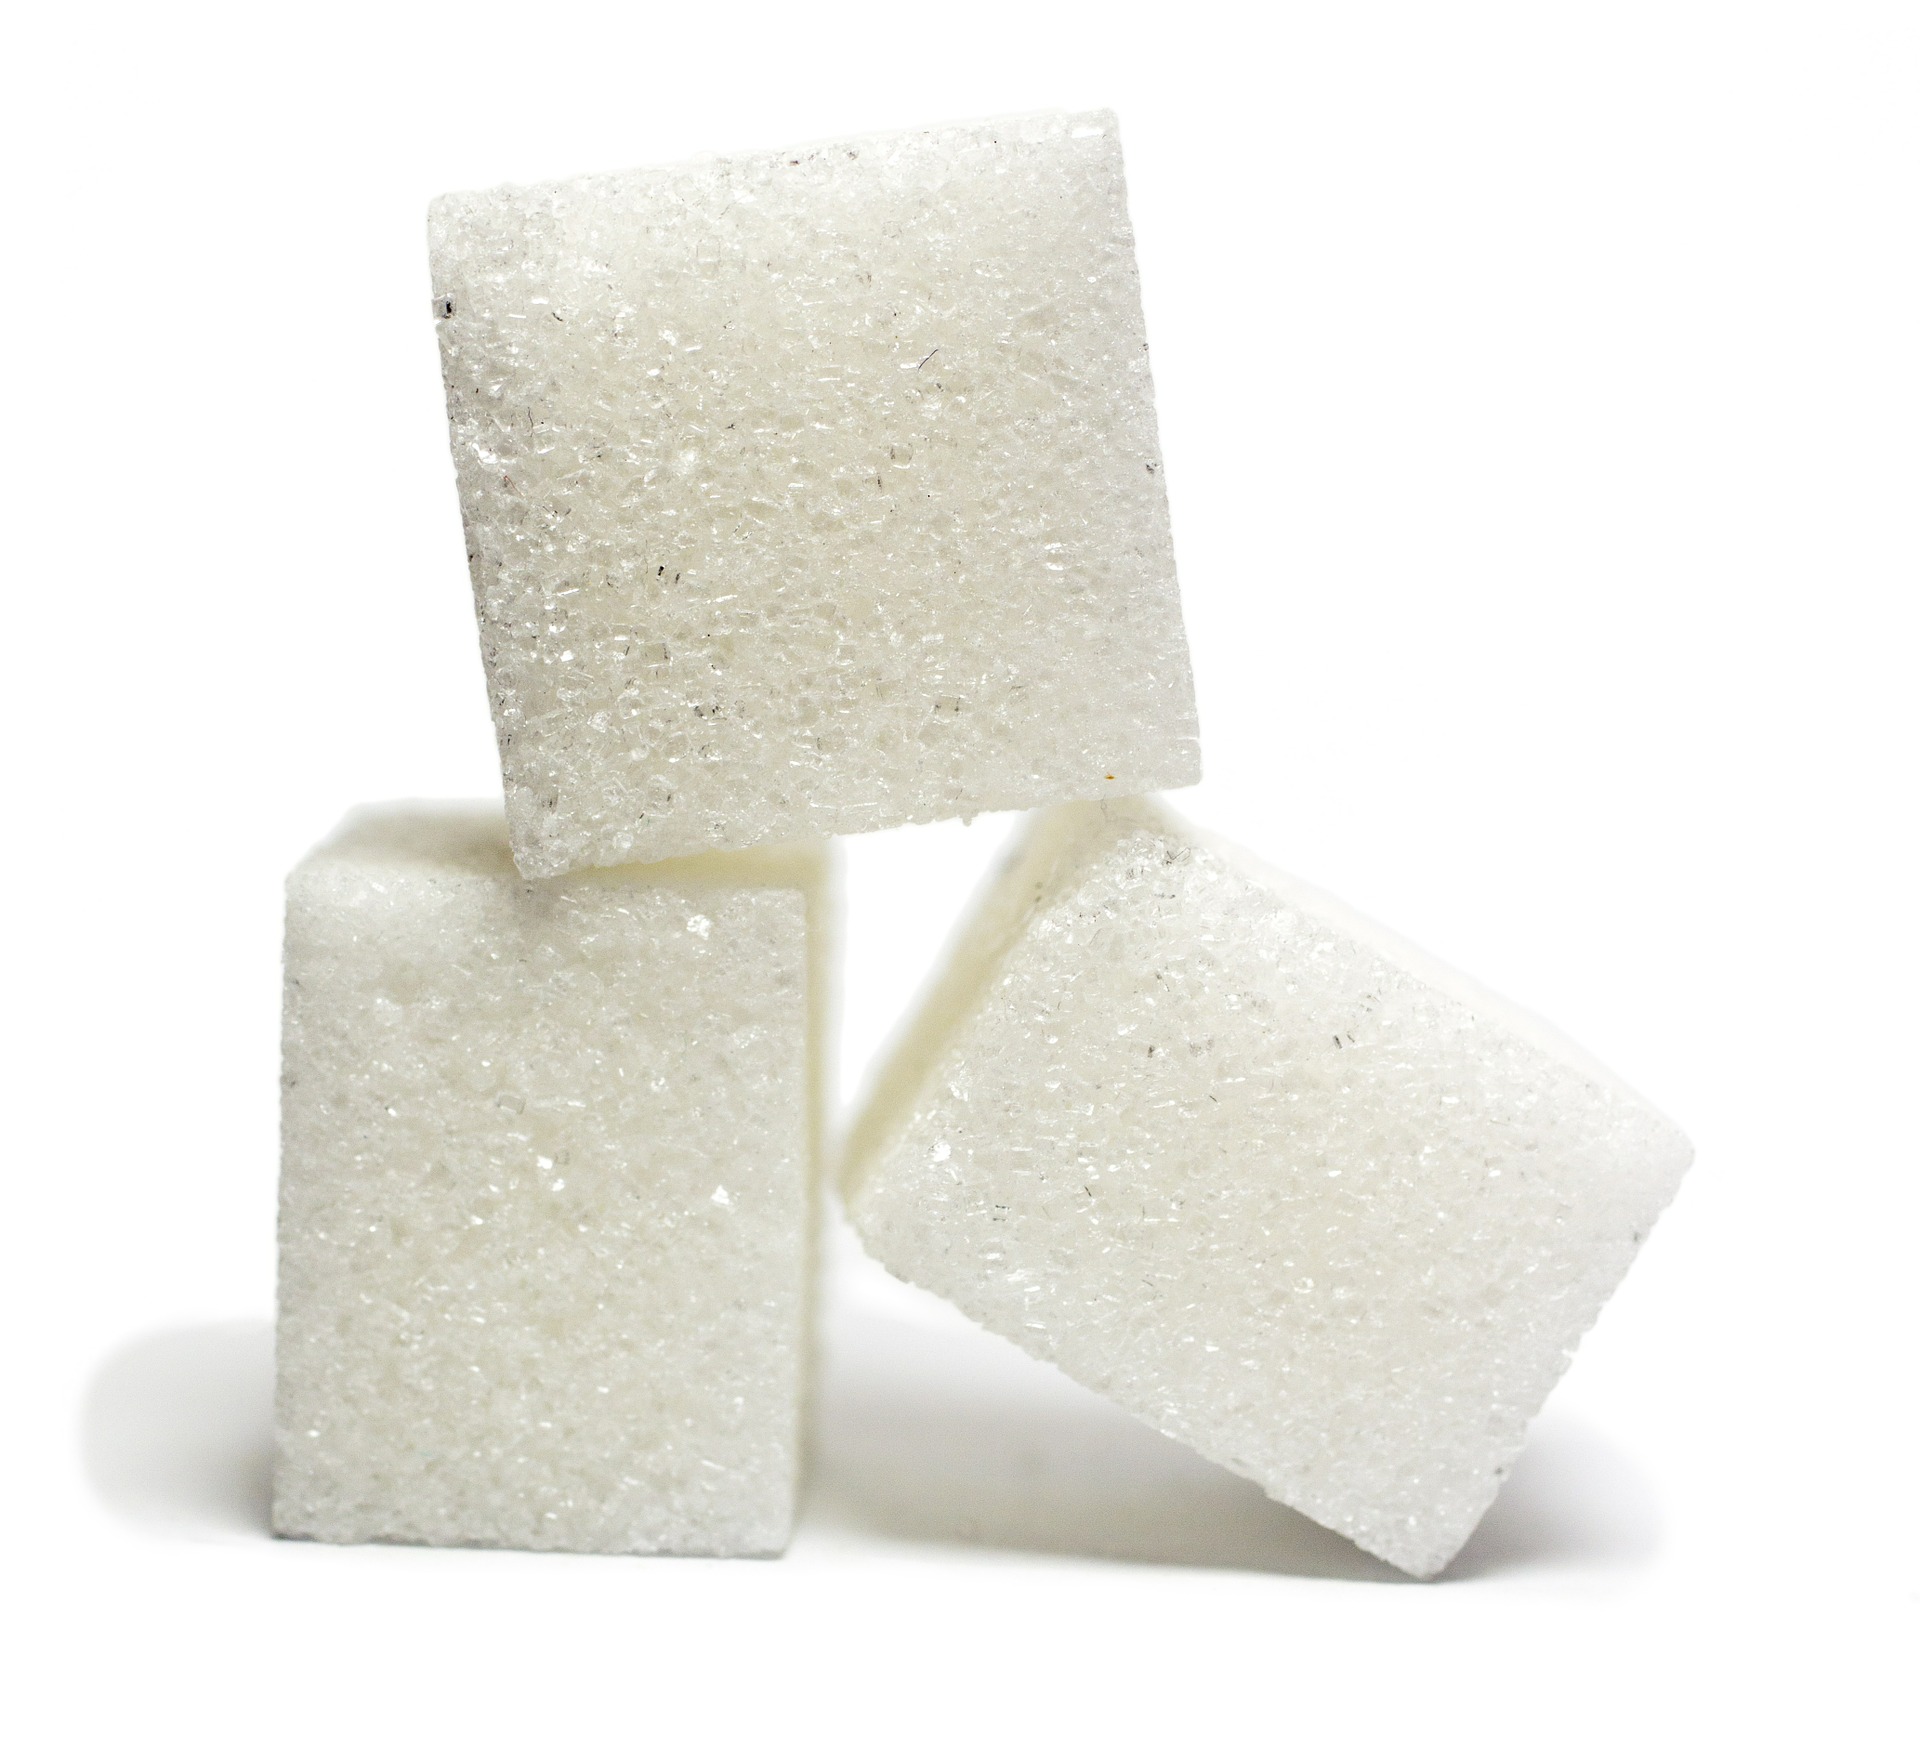 Frio intenso reduz produção de açúcar na China